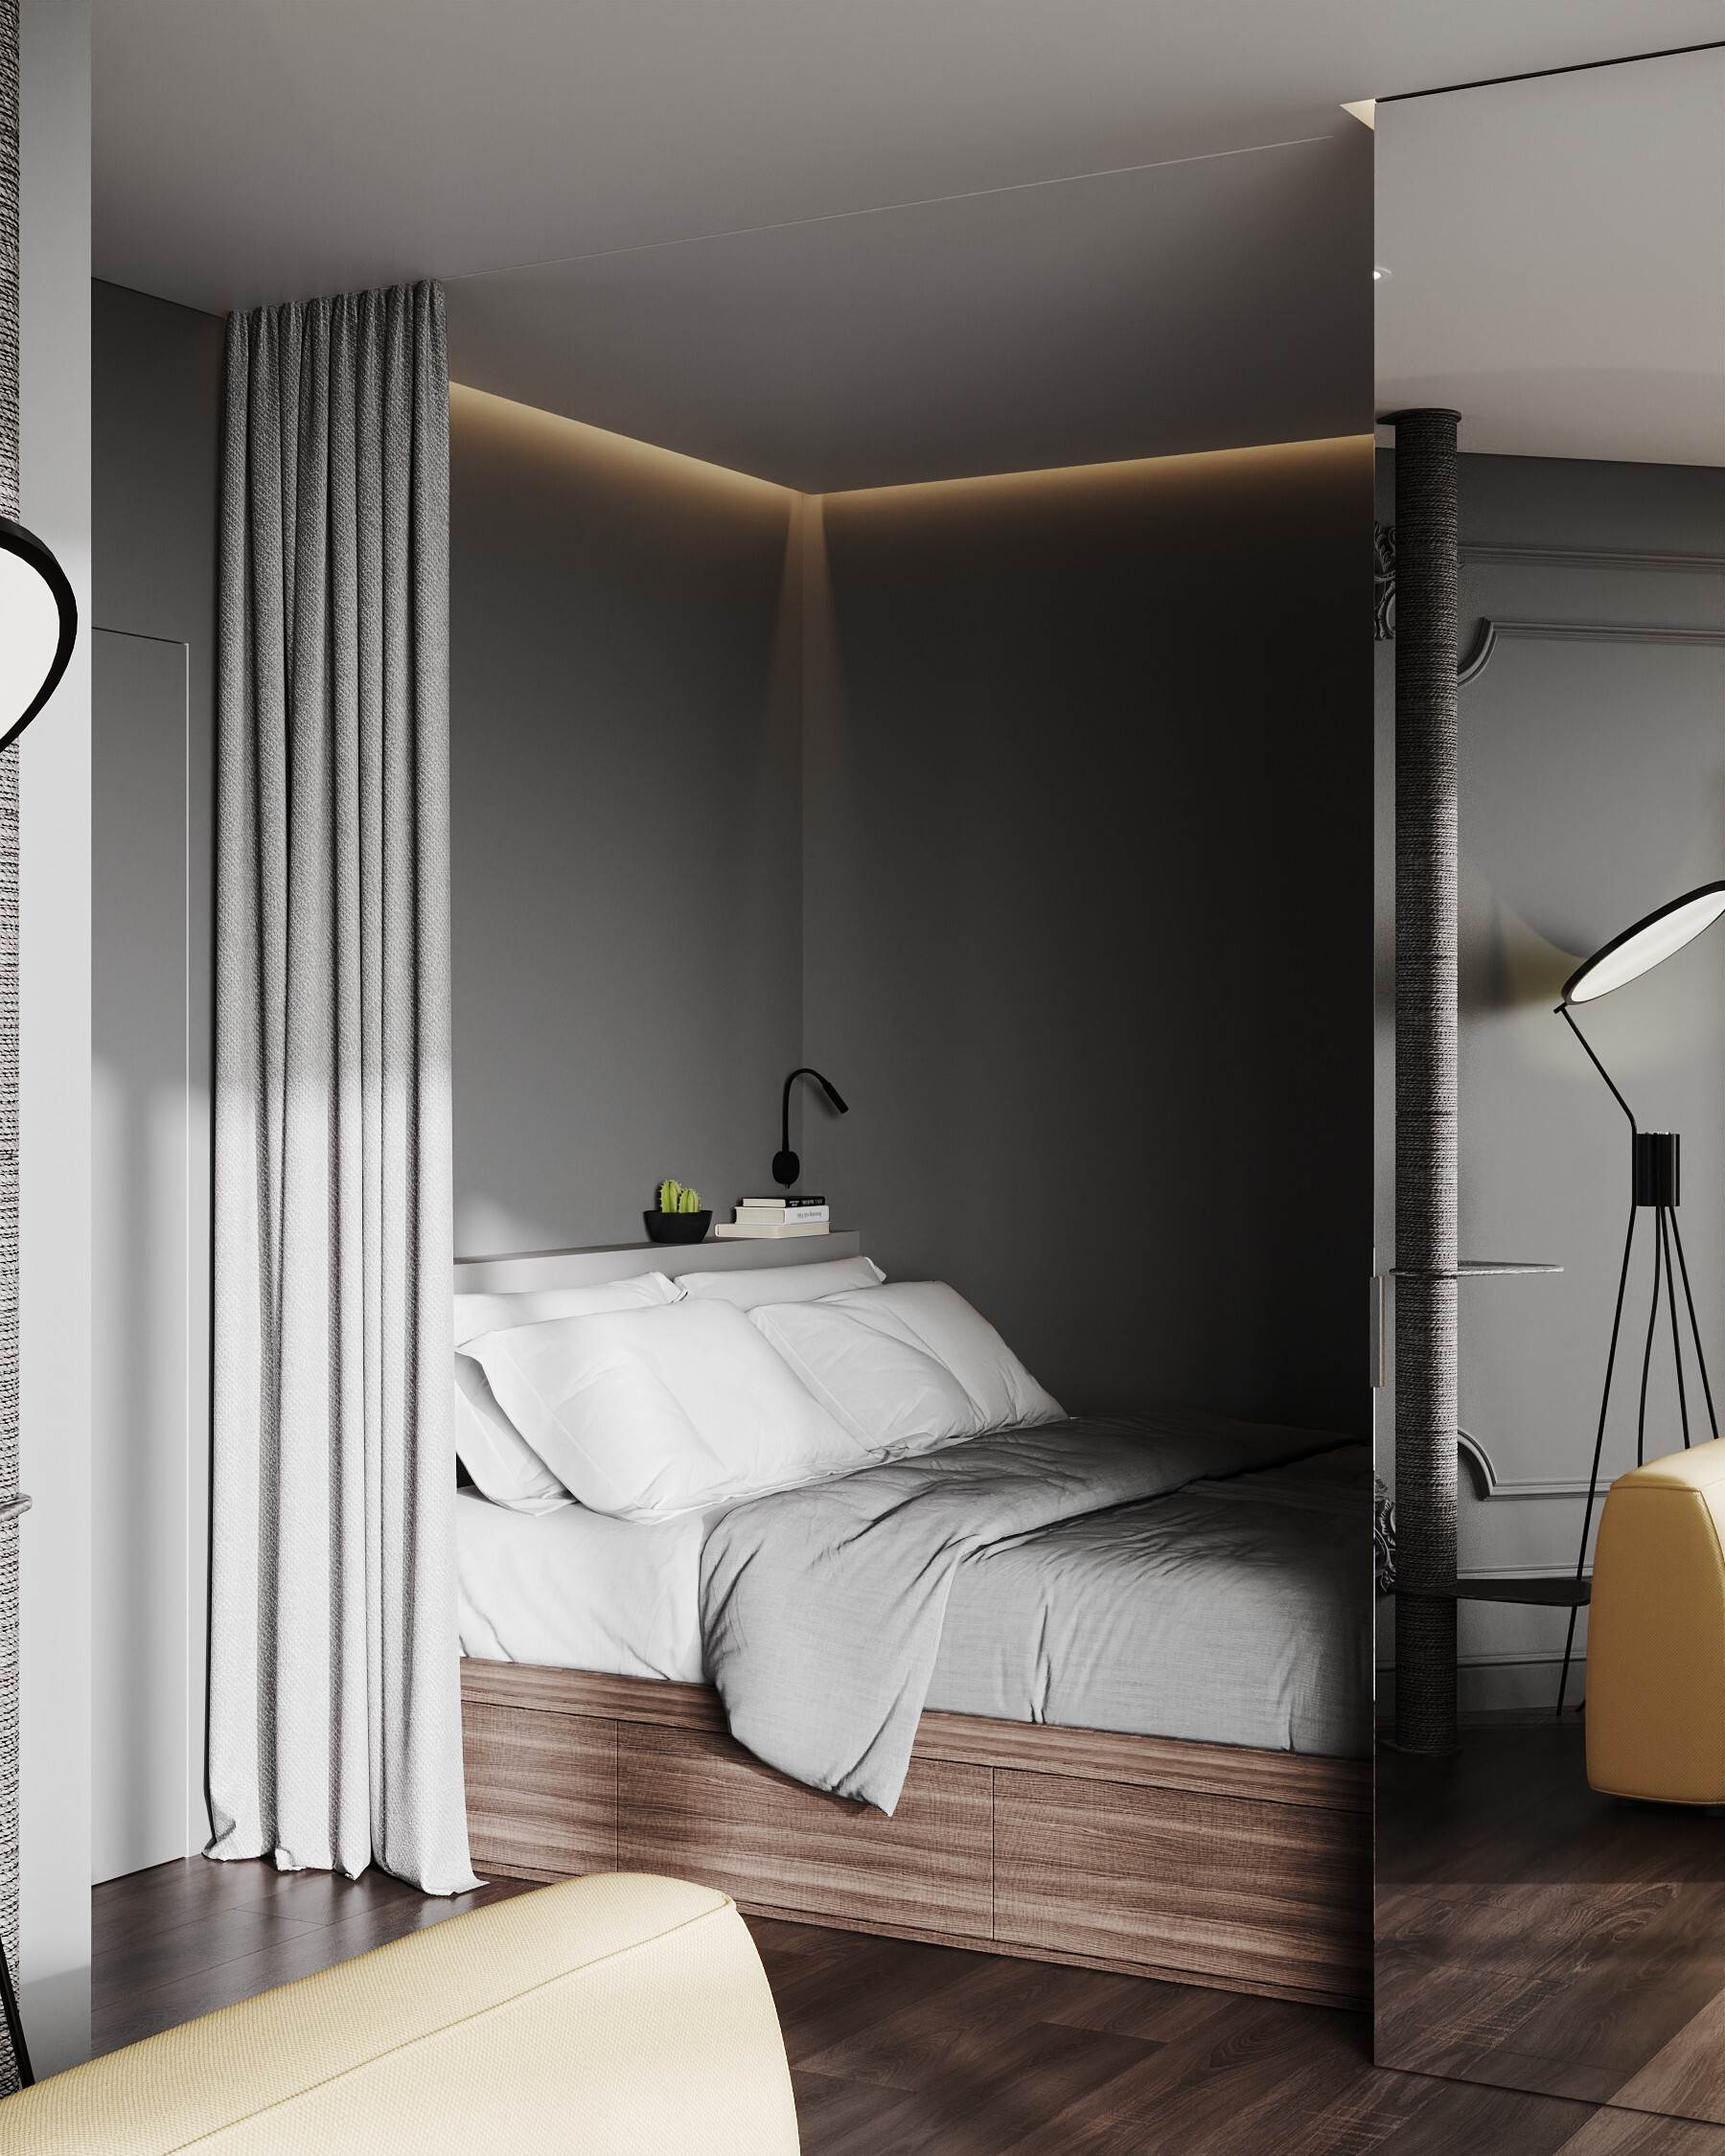 Интерьер спальни cветовыми линиями, рейками с подсветкой, подсветкой настенной, подсветкой светодиодной и светильниками над кроватью в неоклассике